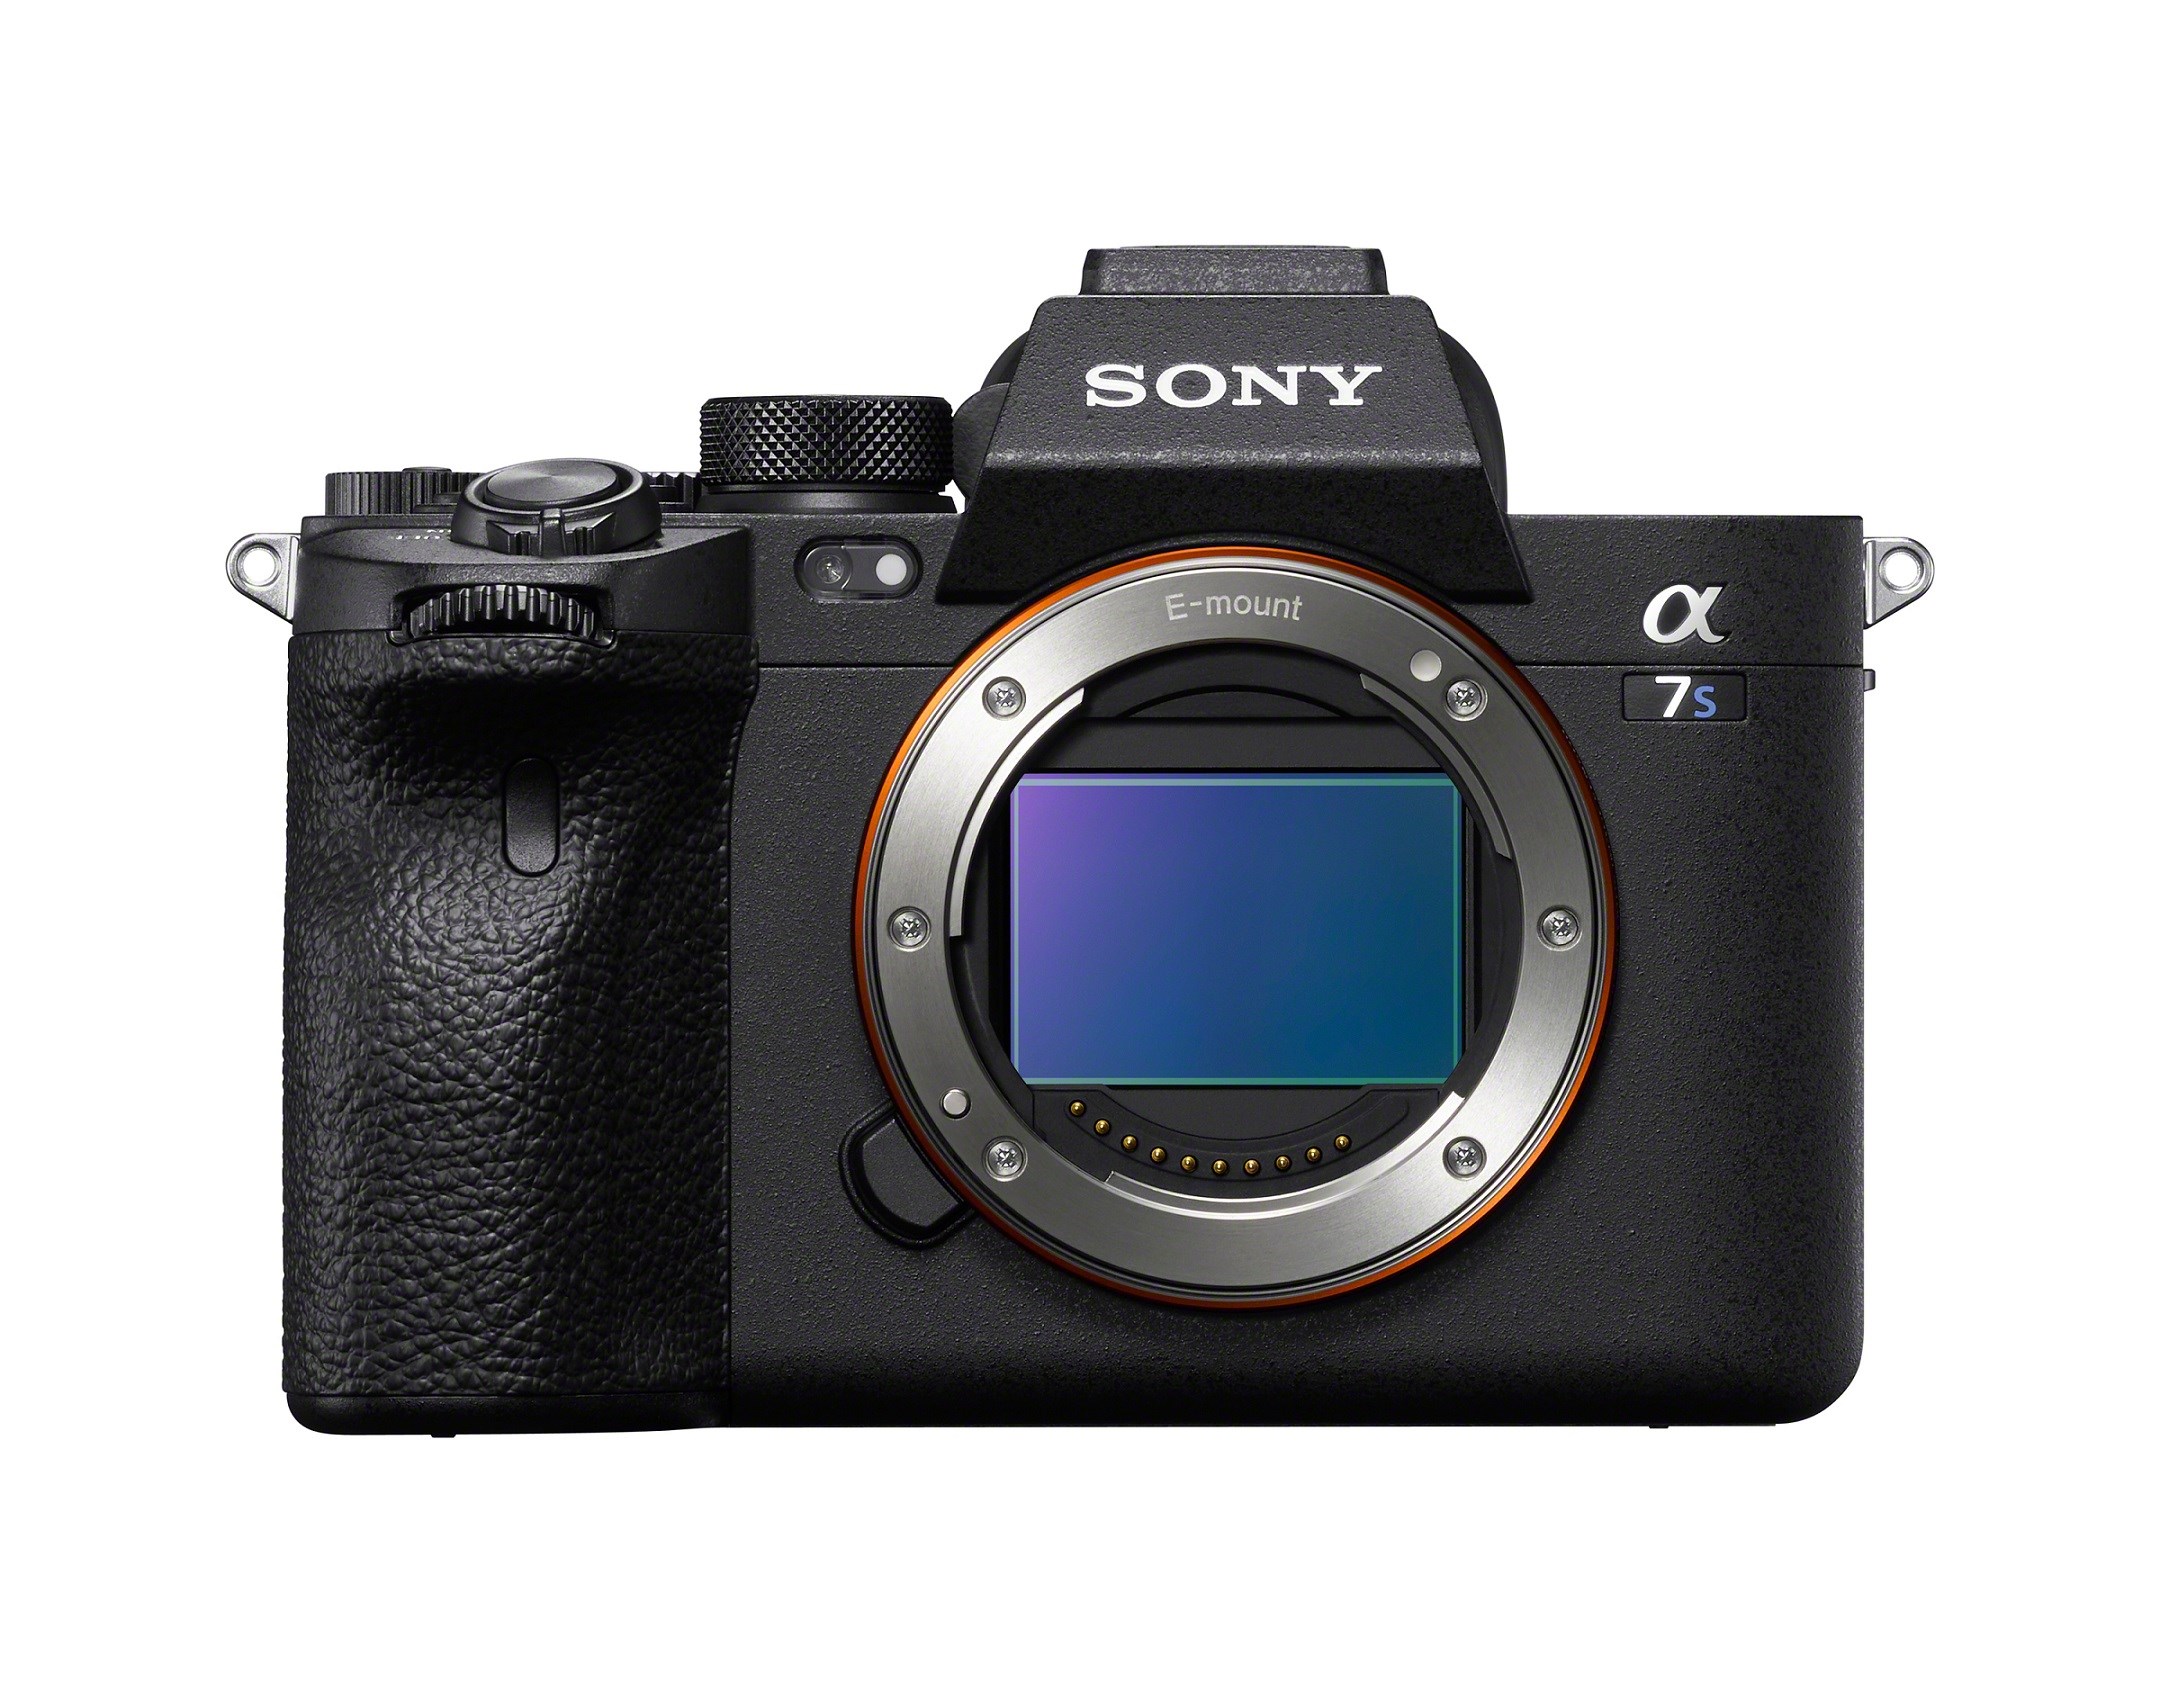 Sony Alpha 7S III tam kare aynasız fotoğraf makinesi tanıtıldı